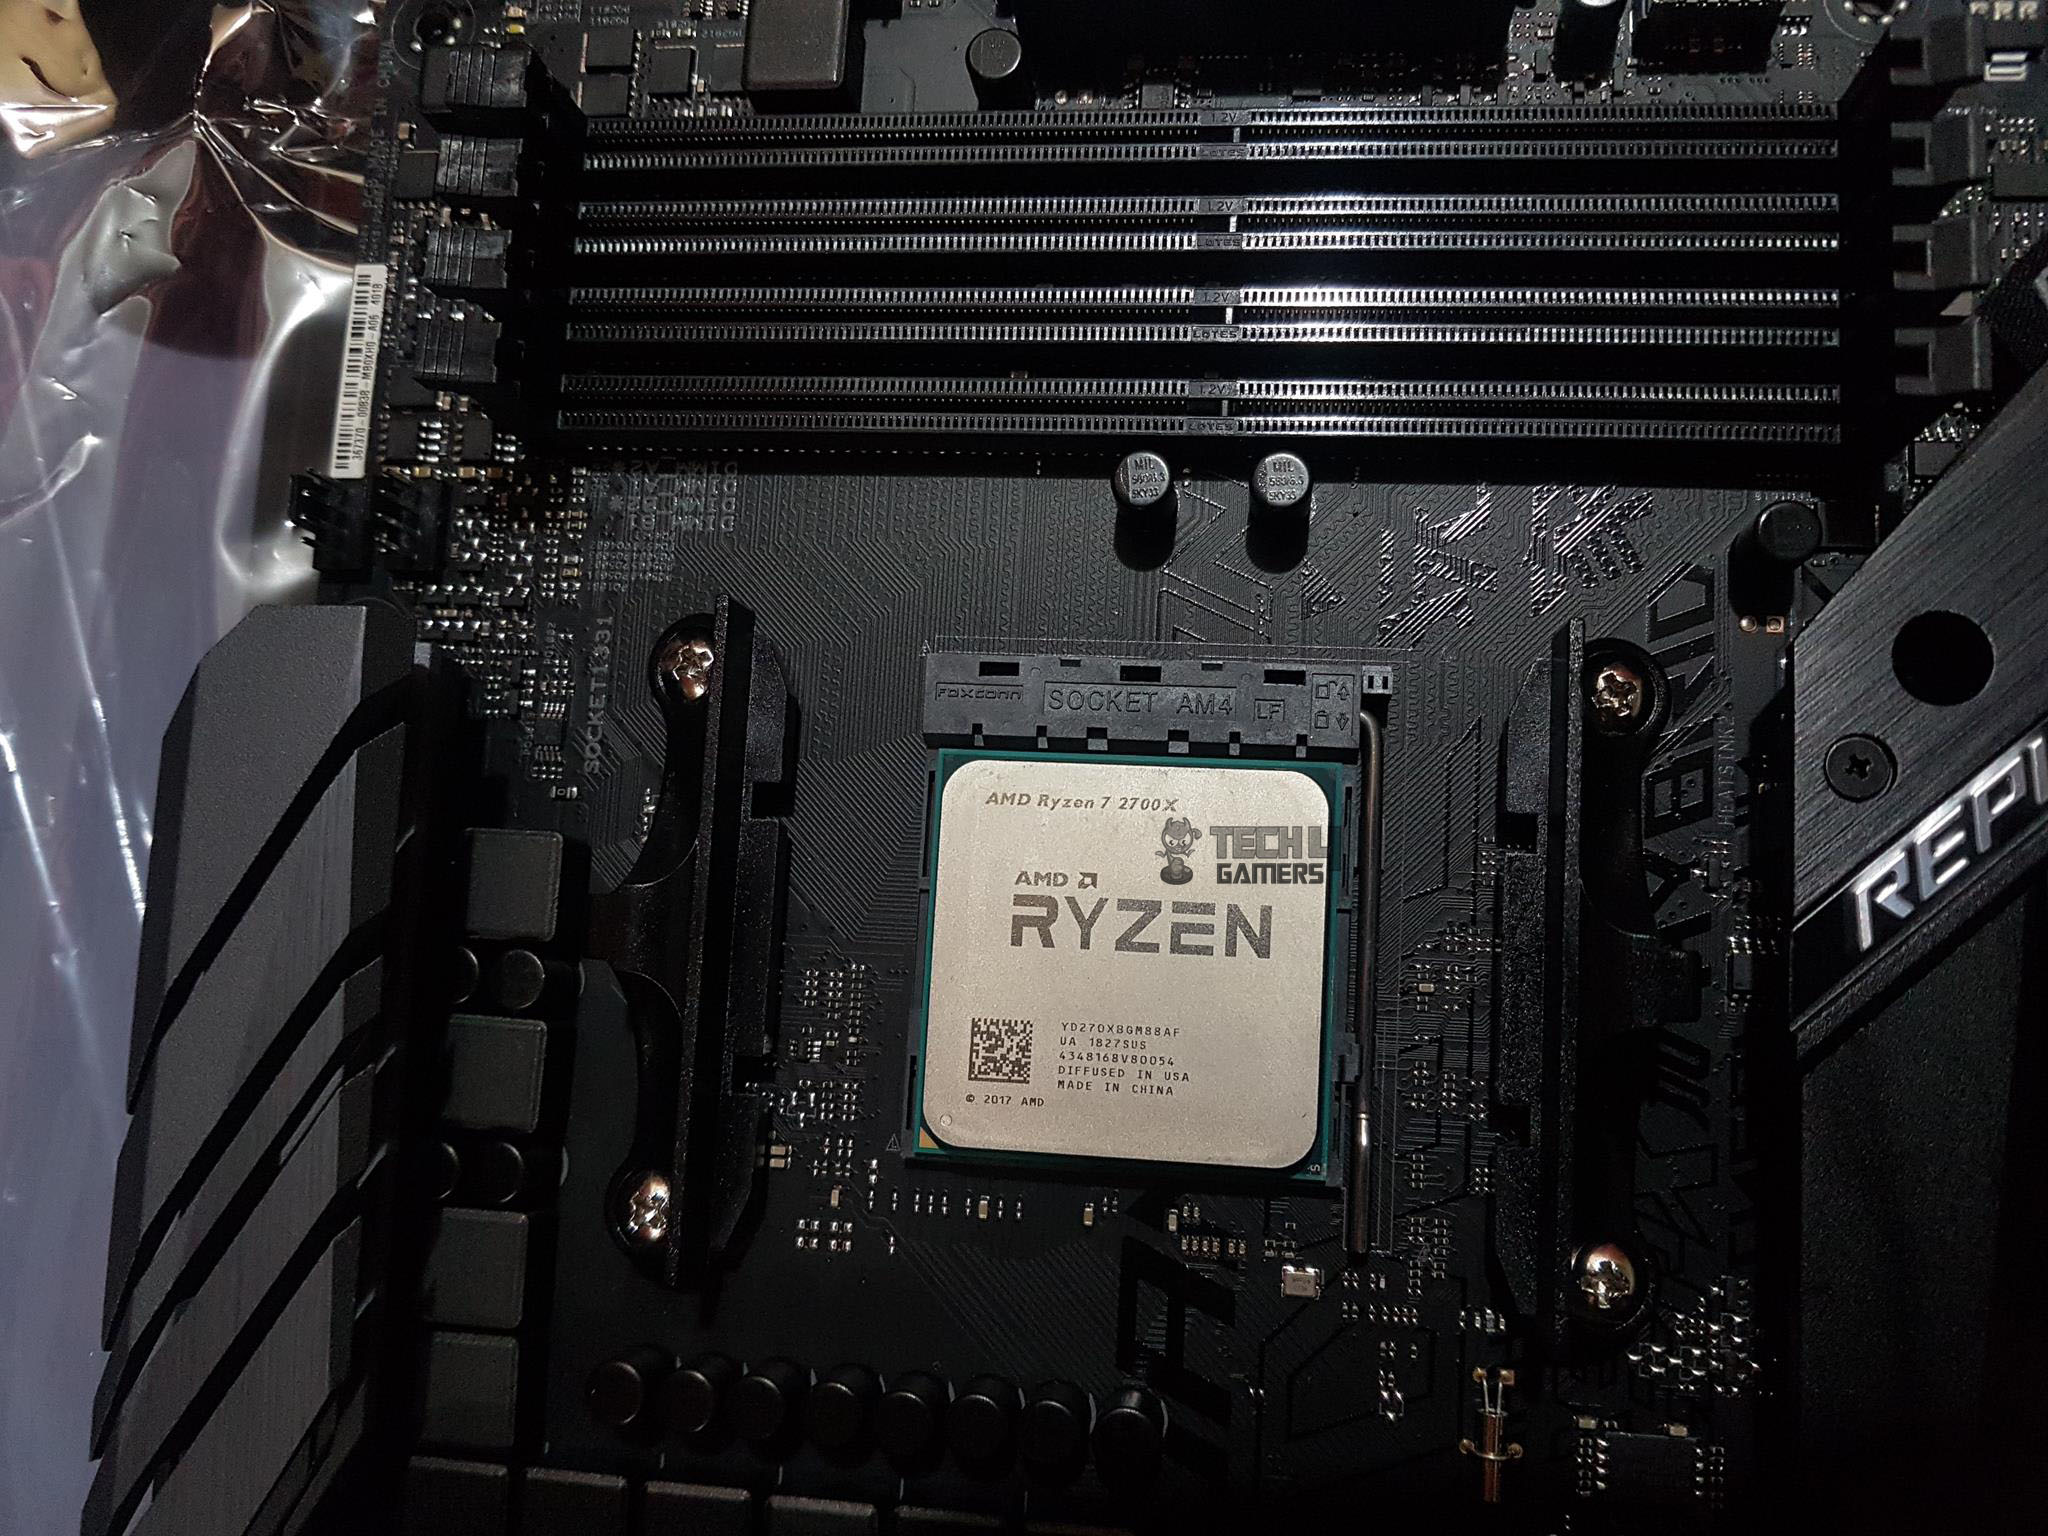 Ryzen 7 2700X Packaging cardboard